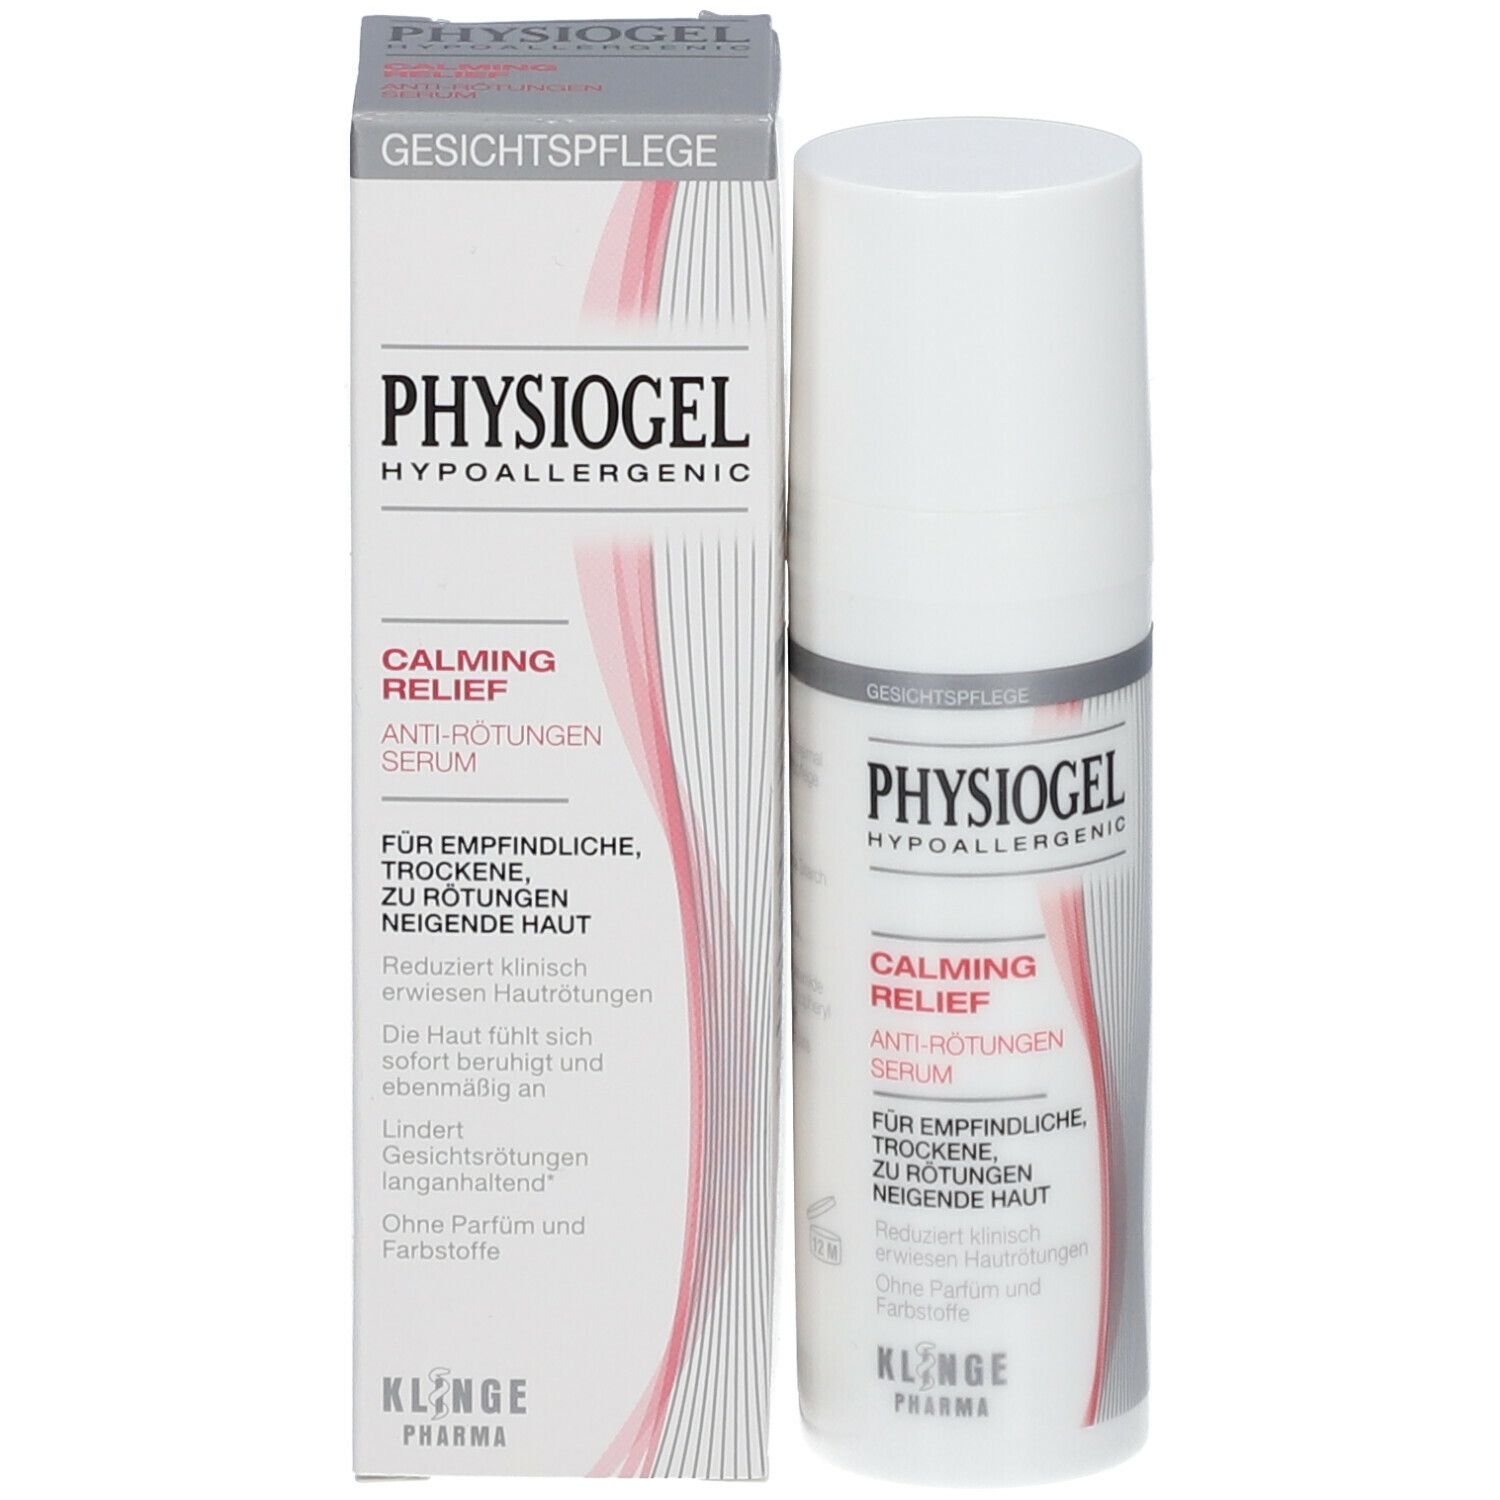 PHYSIOGEL® Calming Relief Anti-Rötungen Serum 30ml  - gerötete Haut